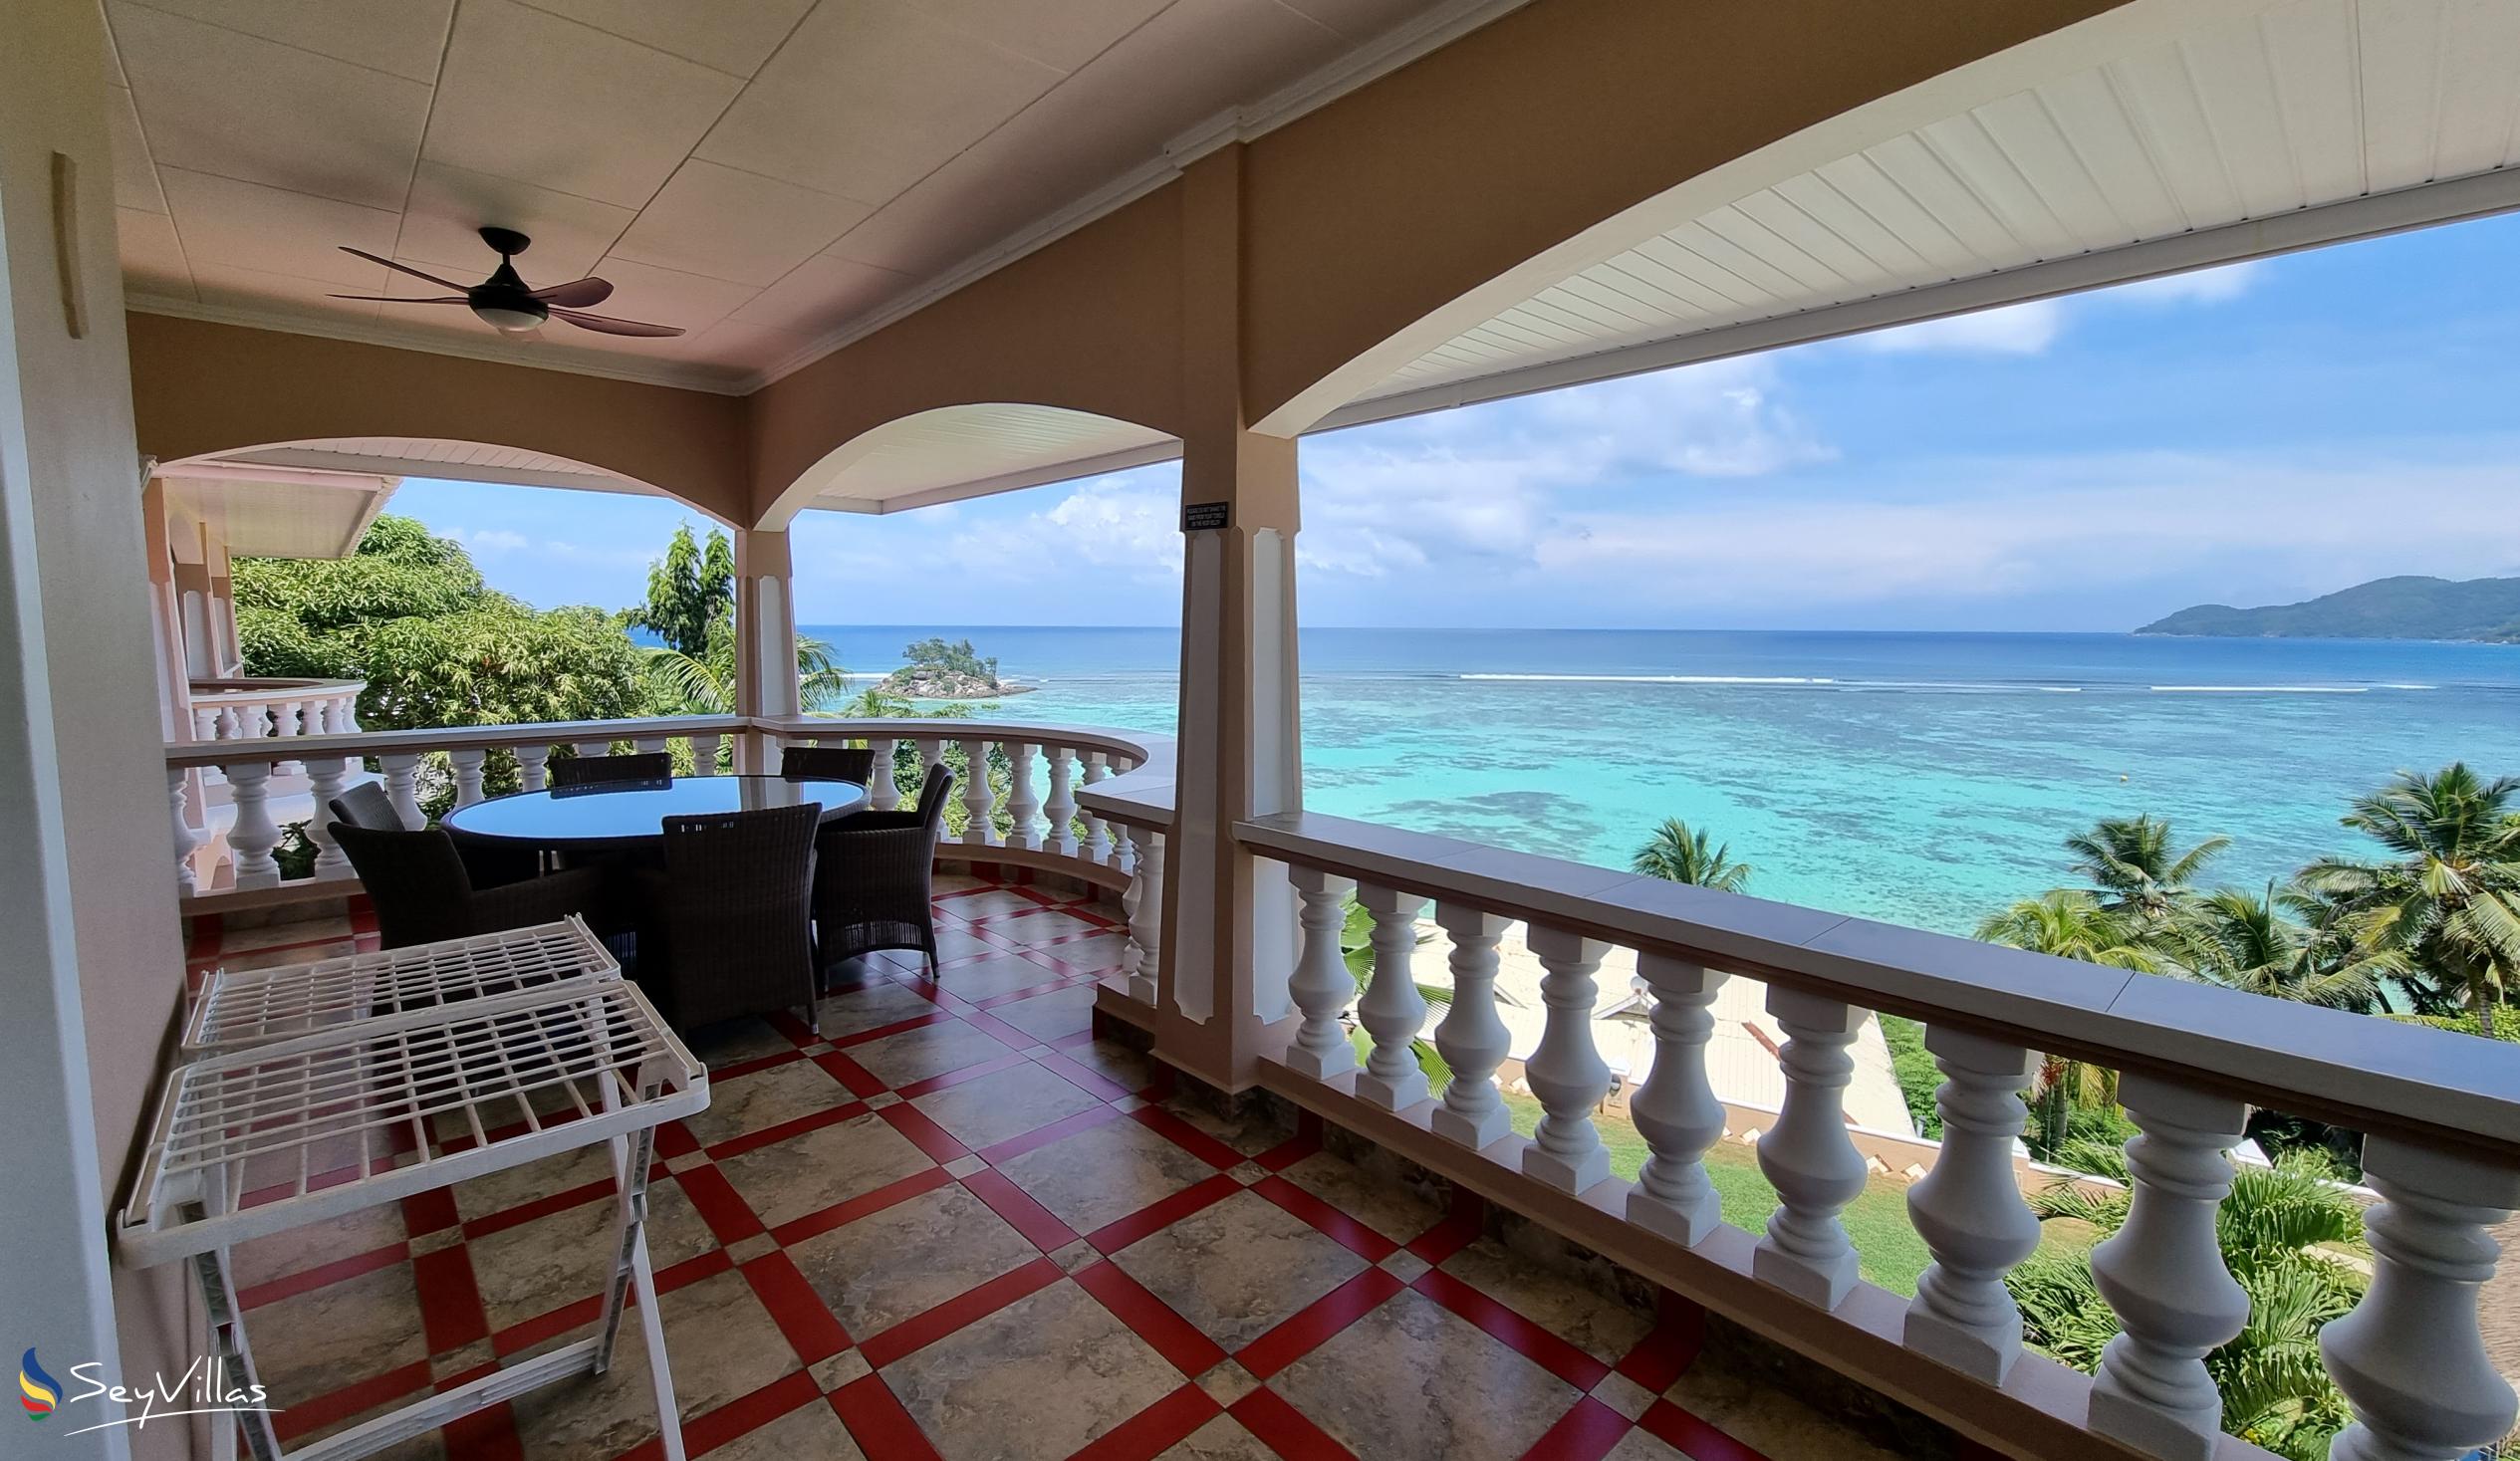 Foto 96: Au Fond de Mer View - Appartement 2 chambres avec vue sur la mer - Mahé (Seychelles)